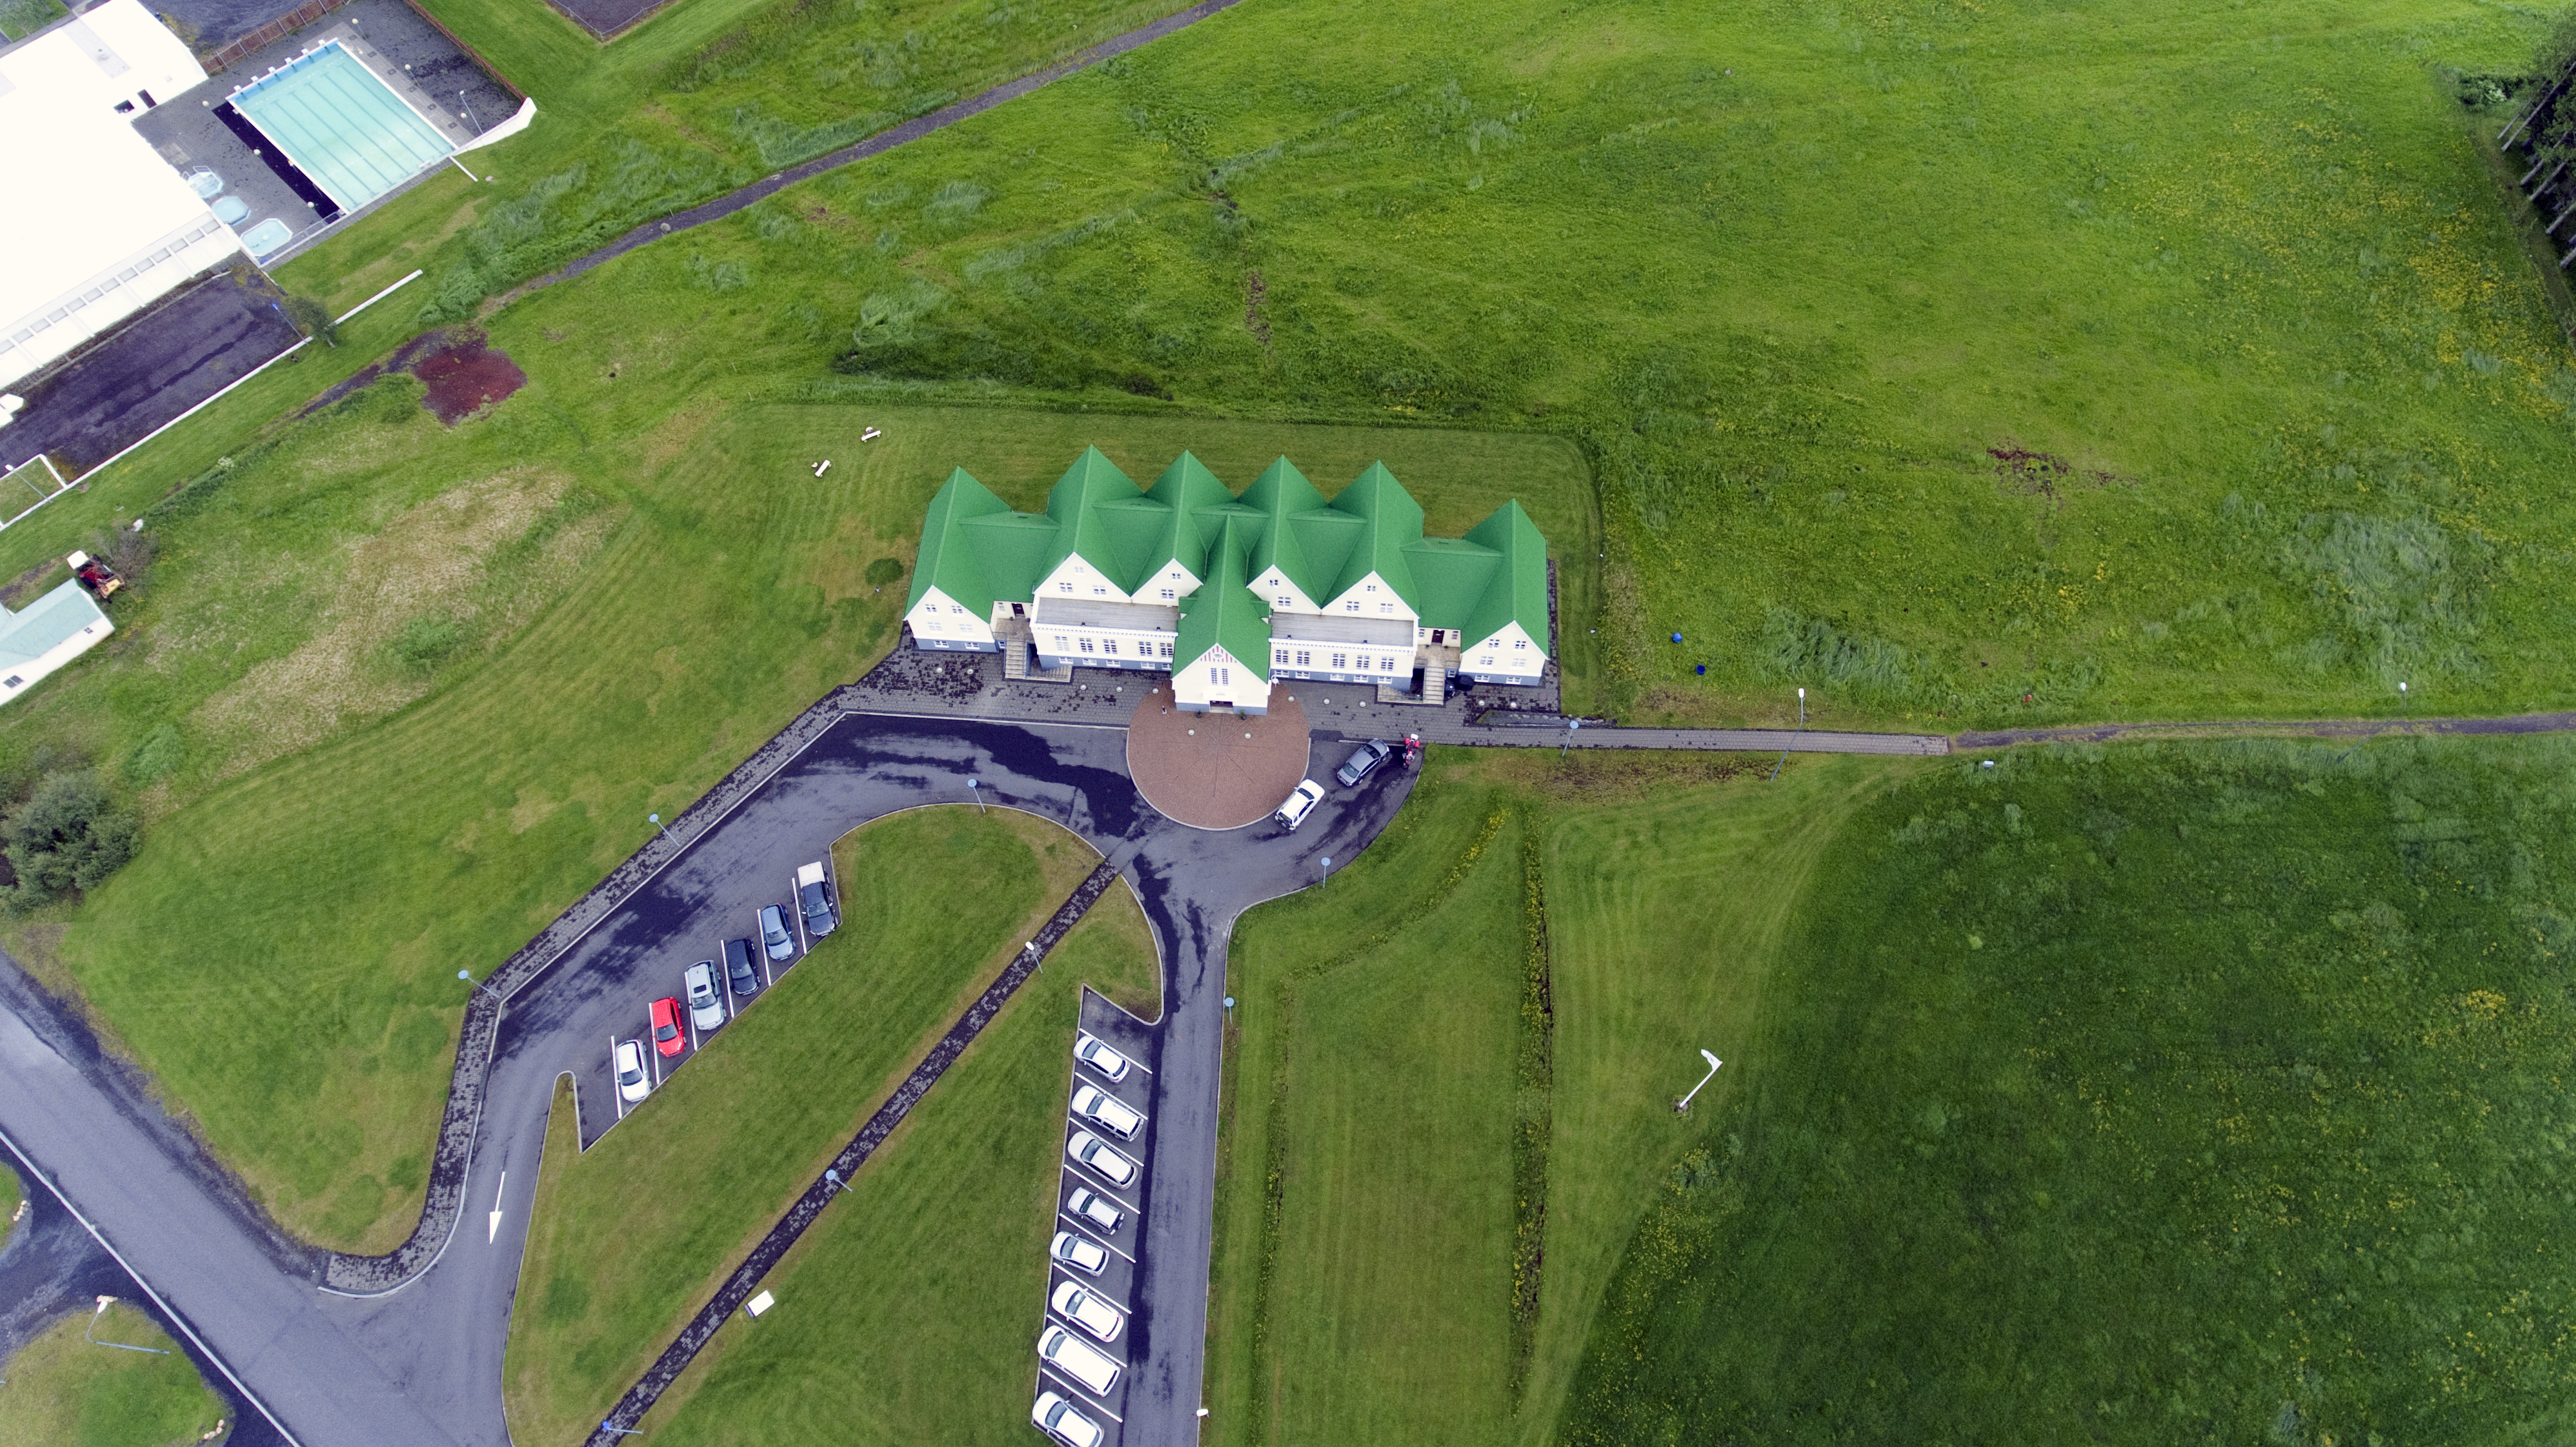 Héraðsskólinn Schoolhouse from the sky